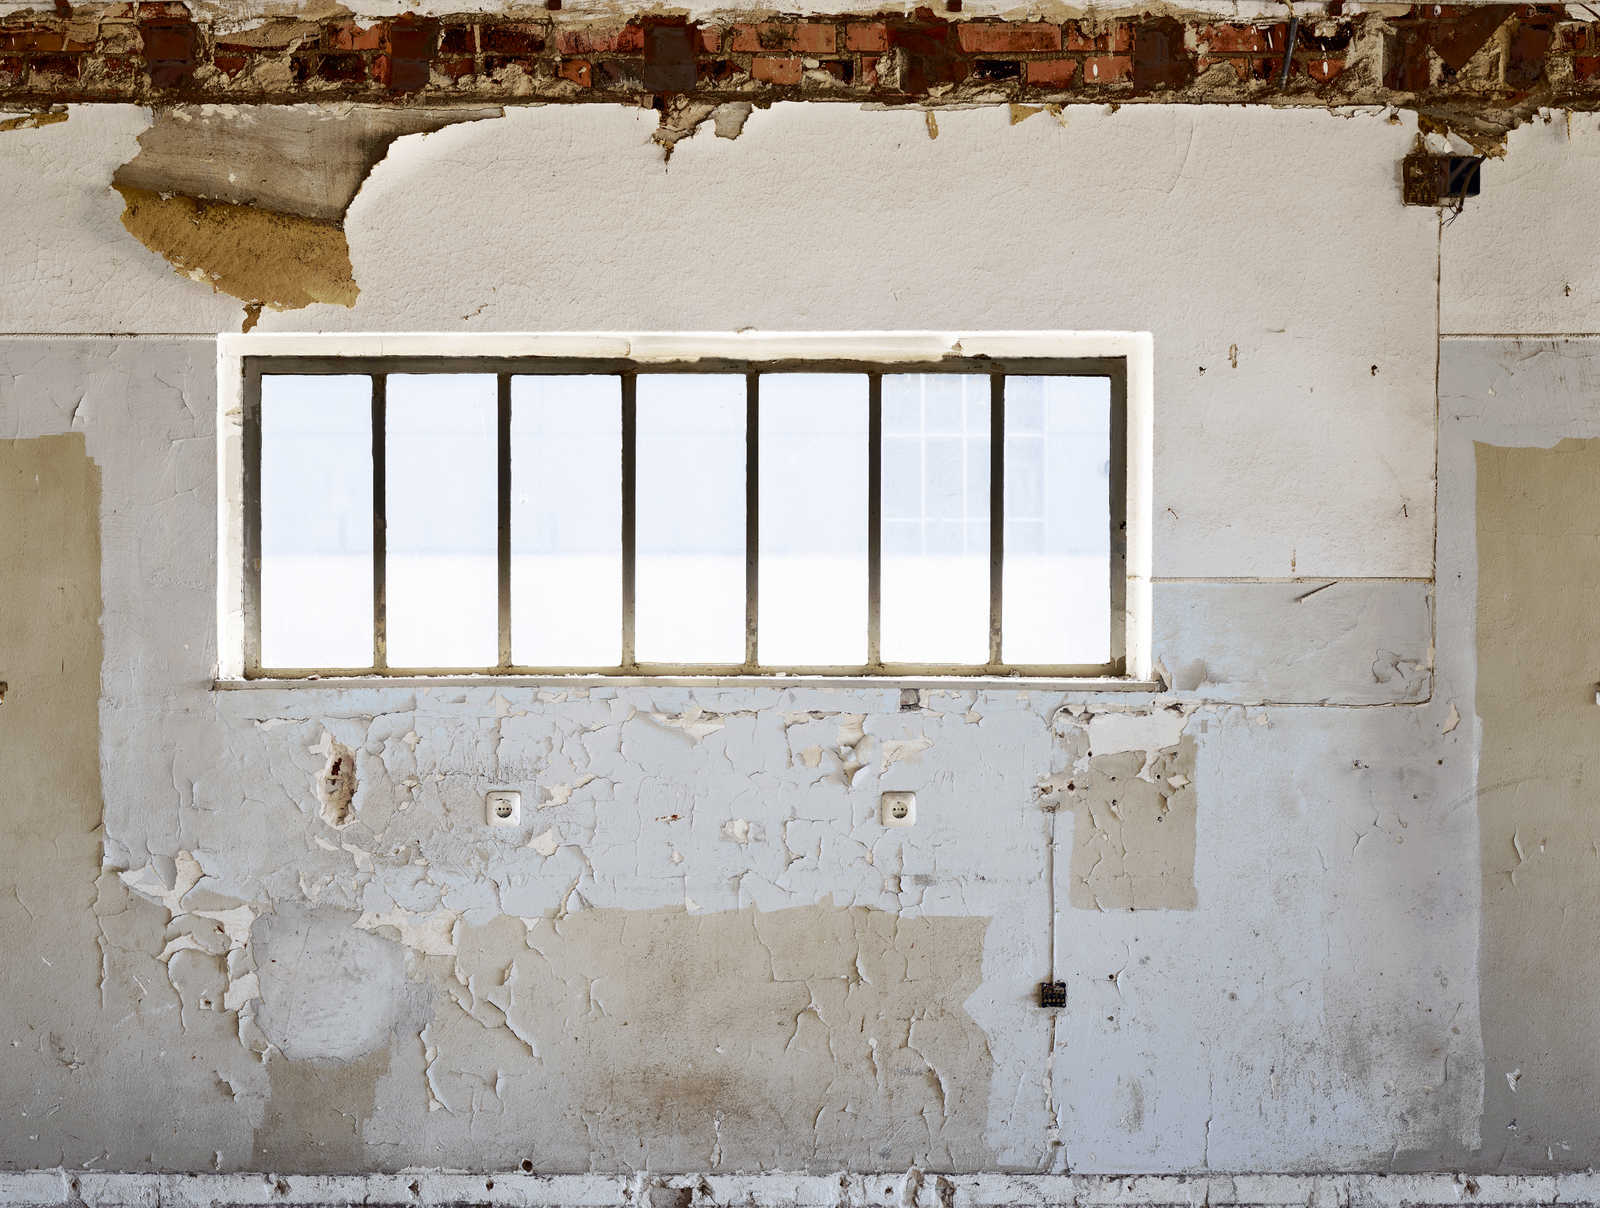             Vliesbehang gebroken kamerwand met raam - beige, grijs, wit
        